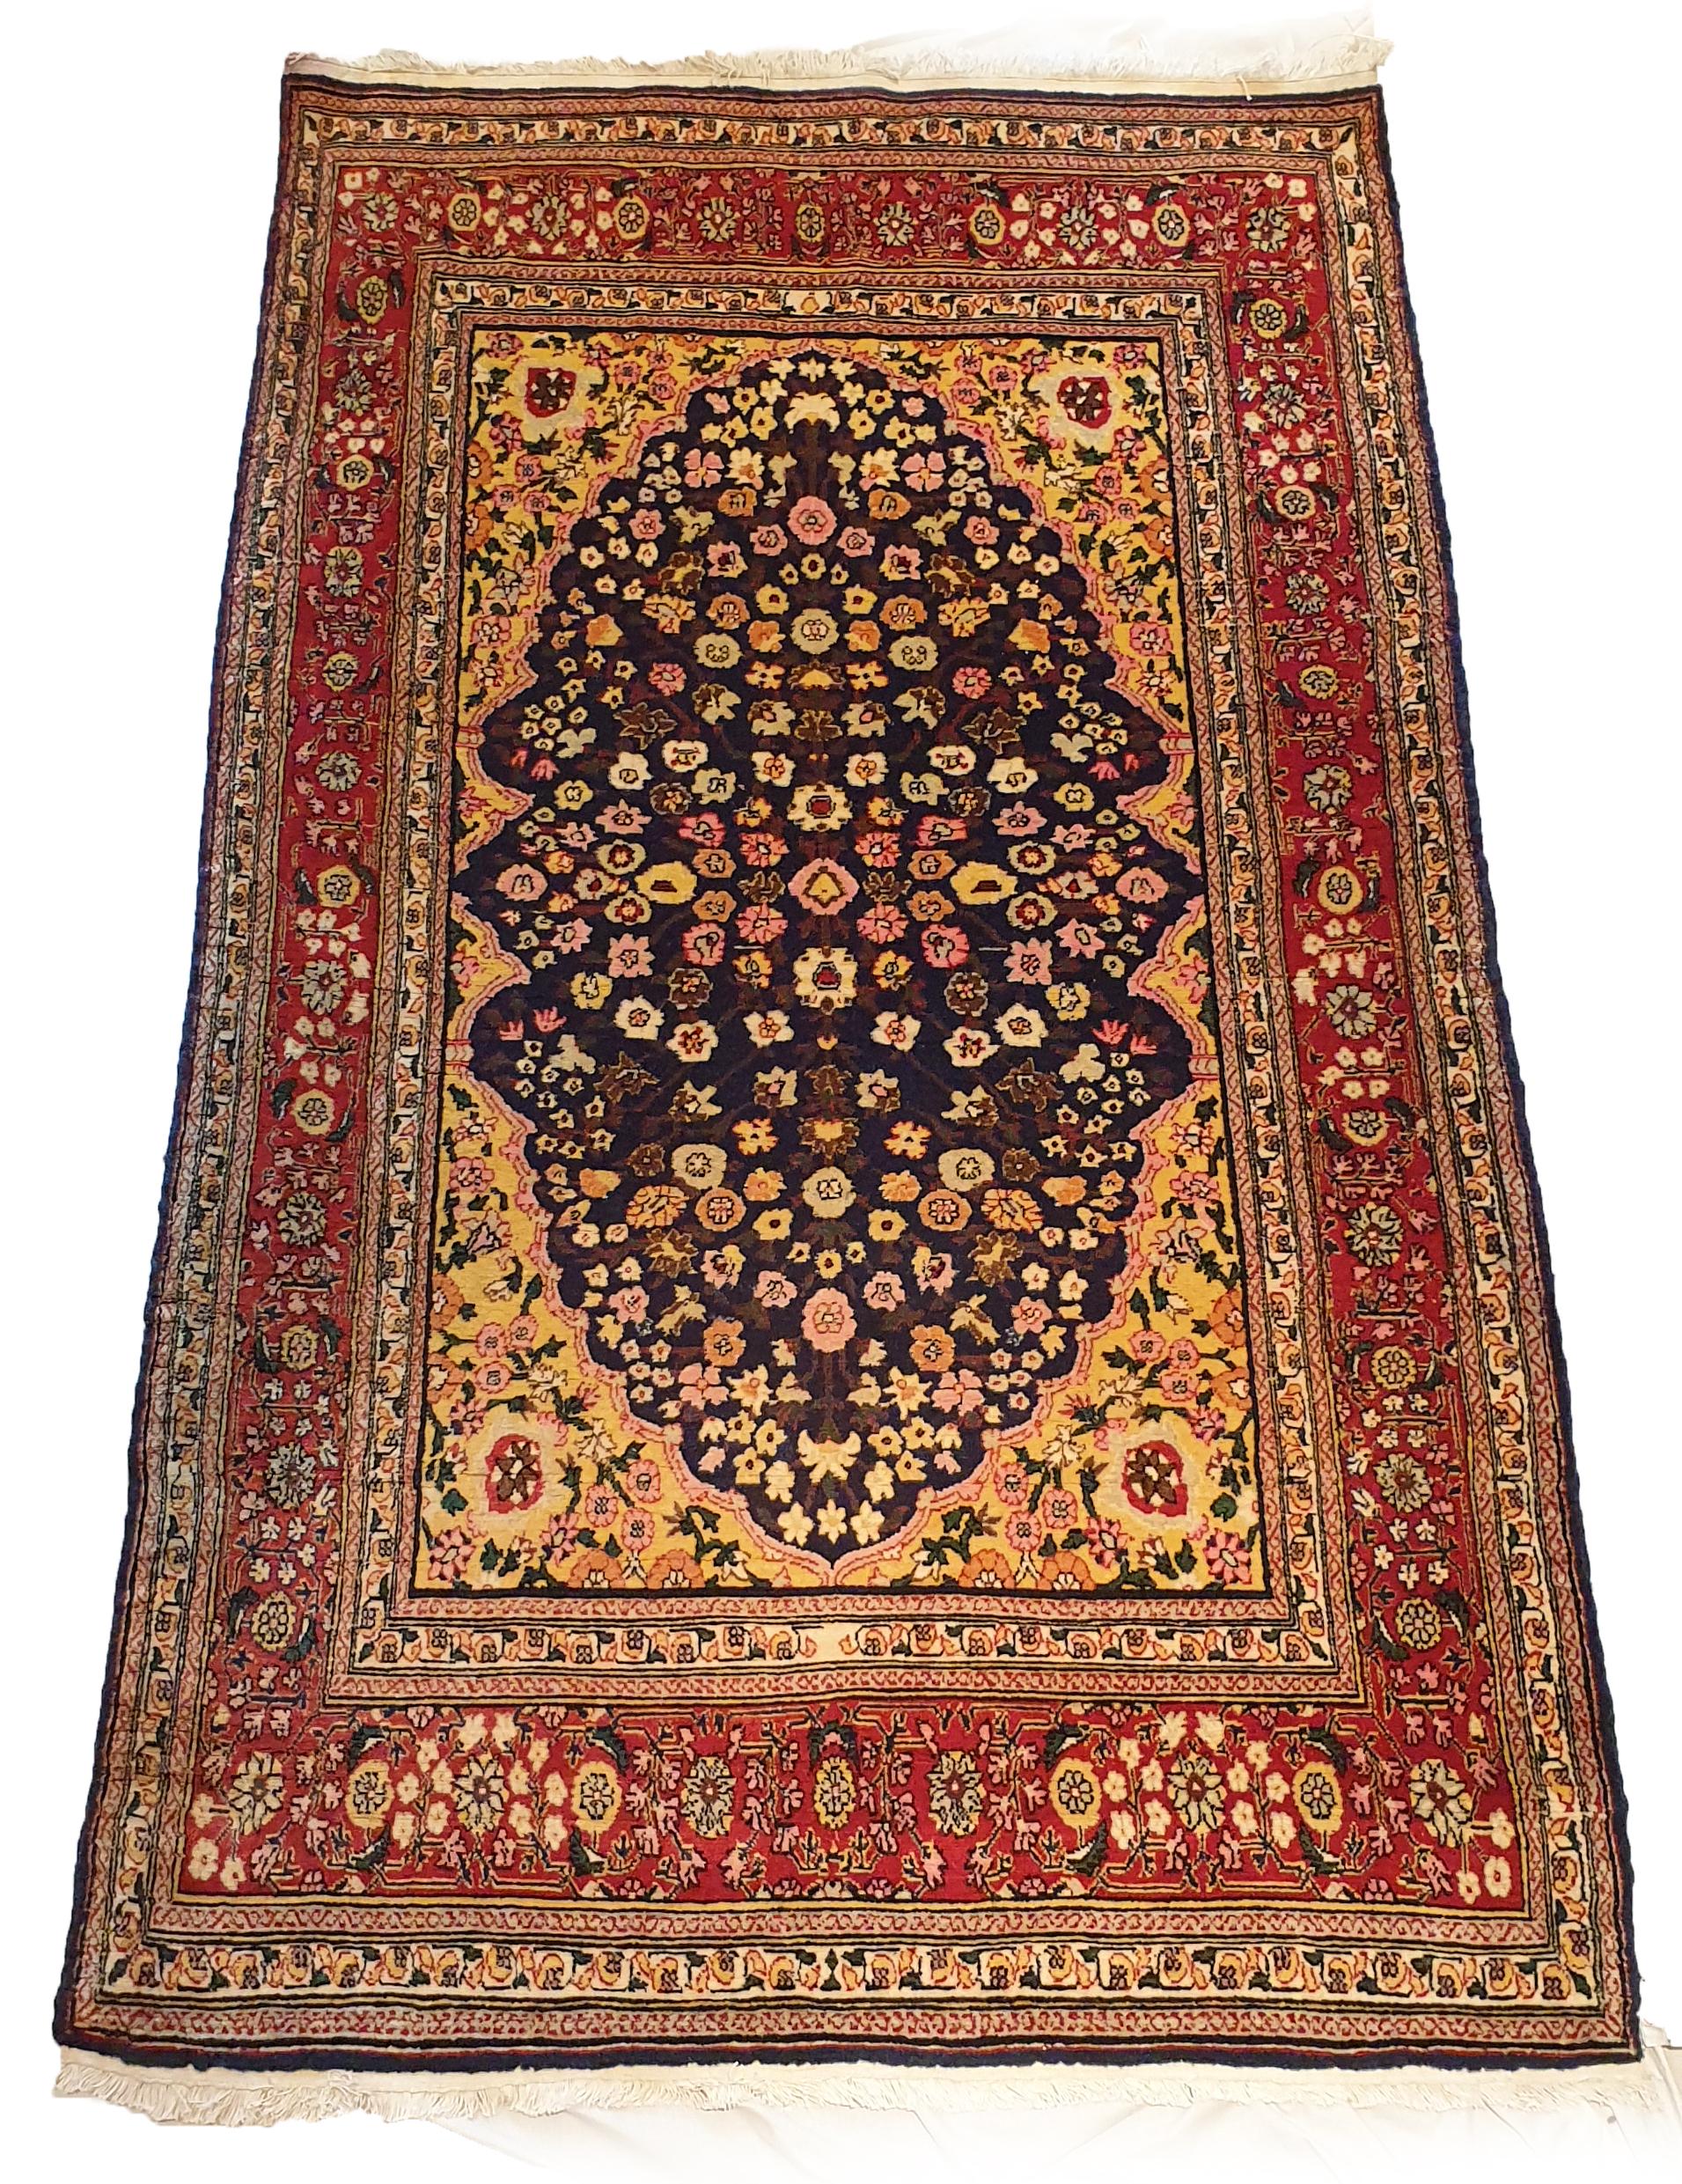 737 - Vintage türkischen Hereke Teppich in Wolle mit schöner Farbe.